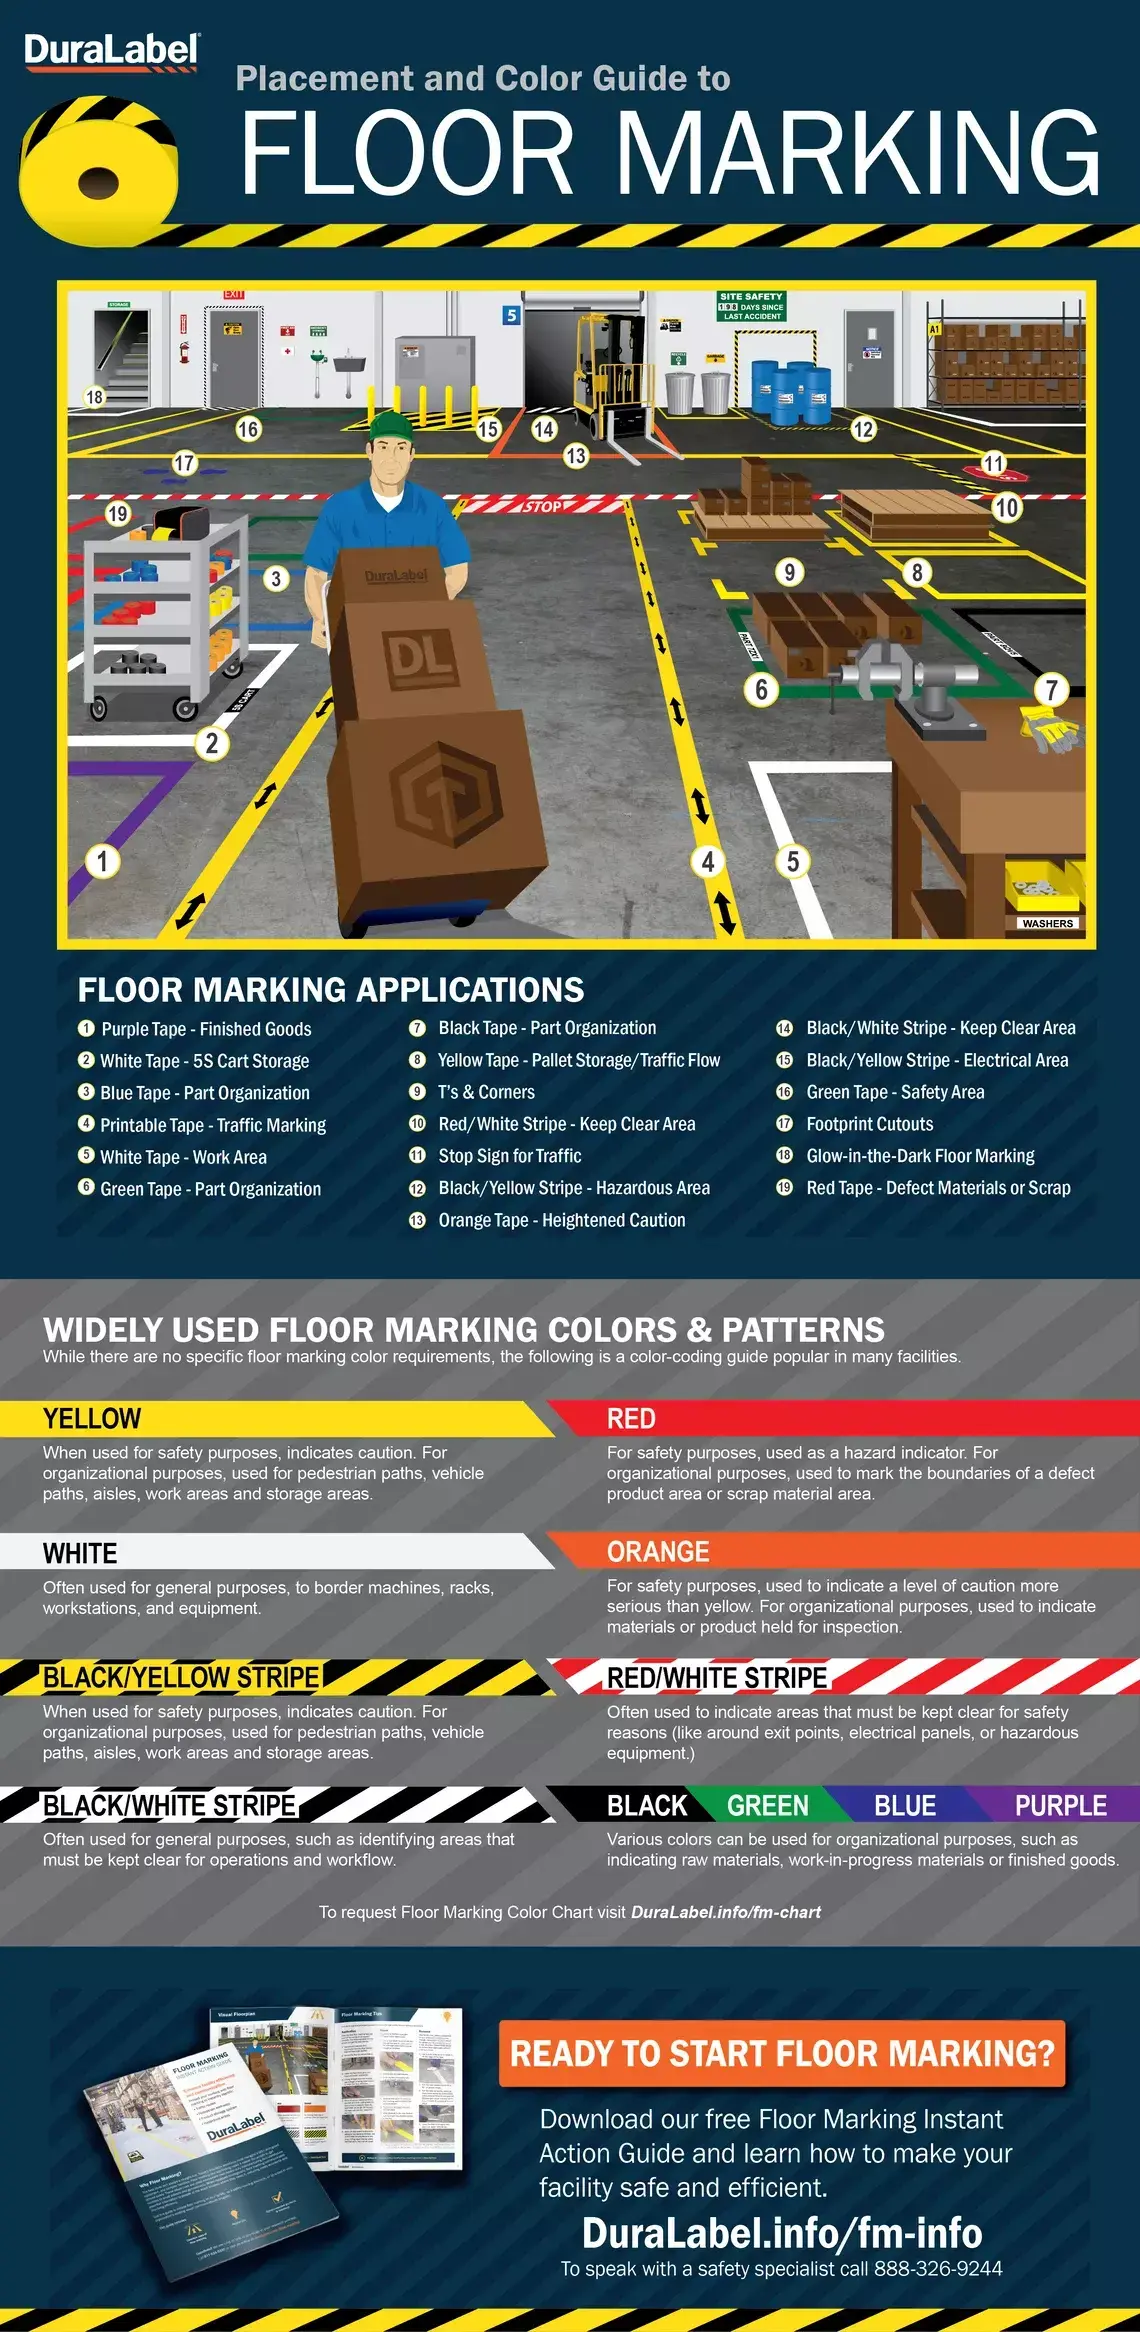 Floormarking infographic 1-29-24